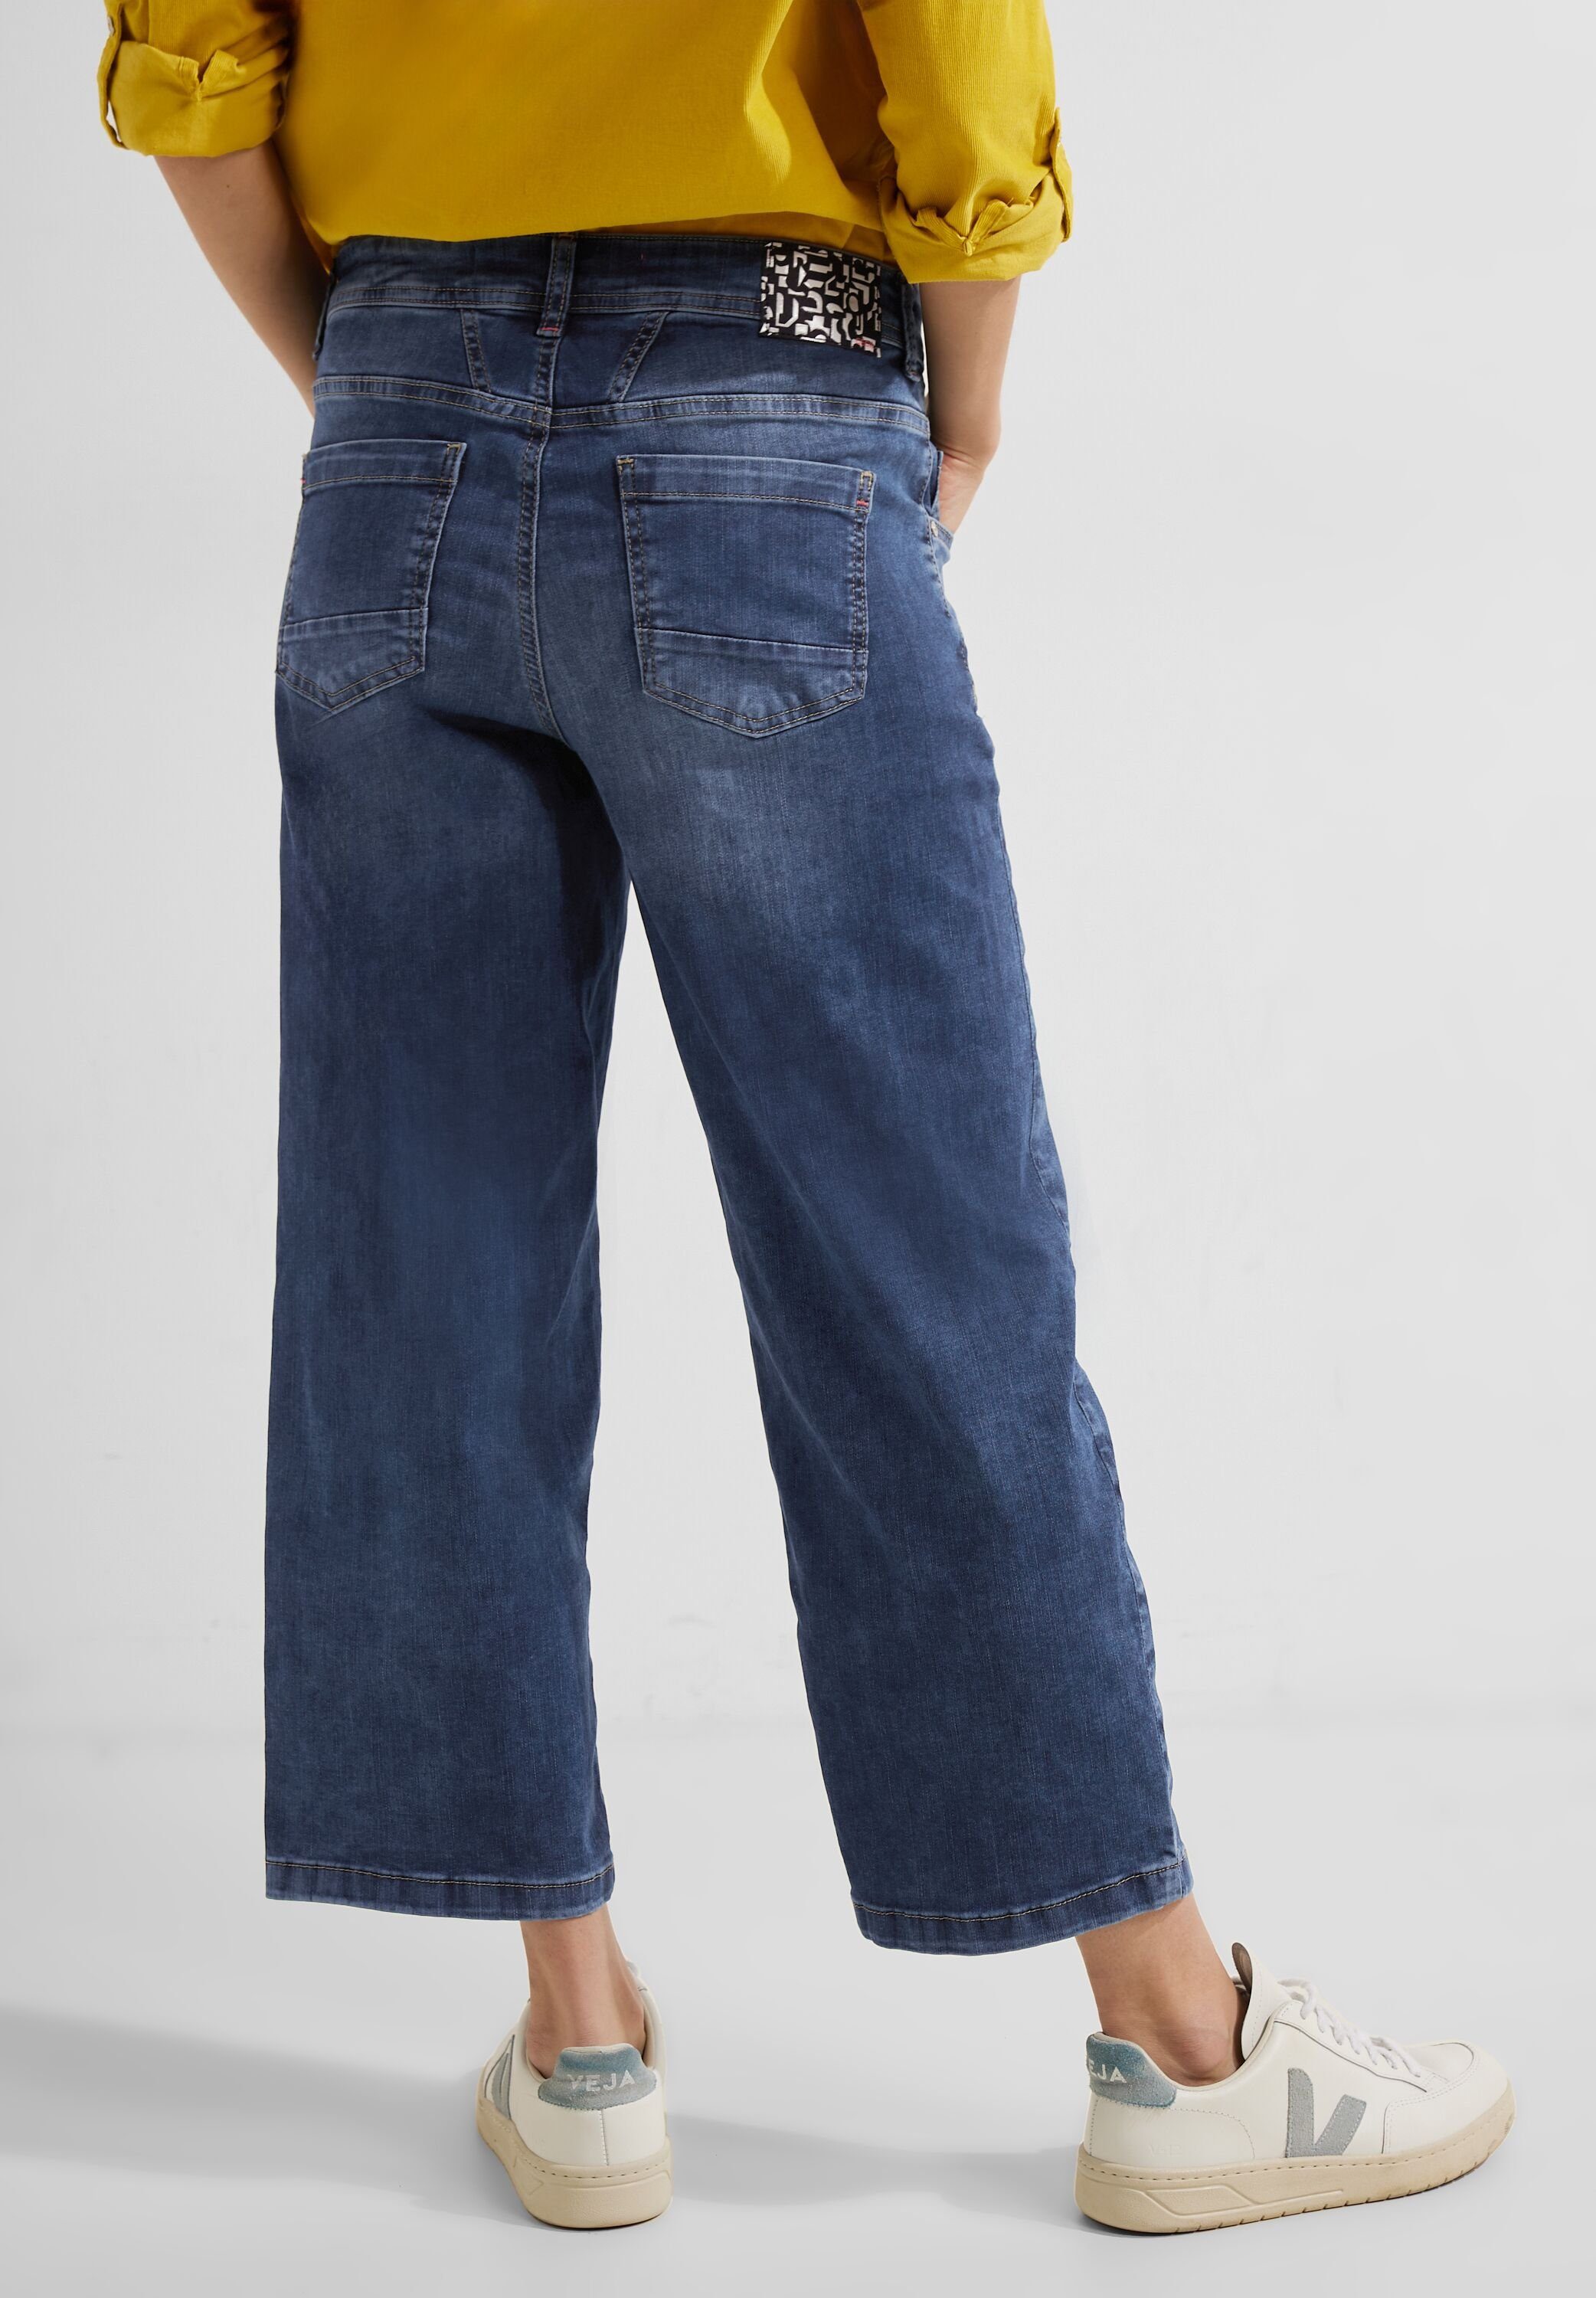 Cecil Loose-fit-Jeans mit Waschung, bei cm 24 Innenbeinlänge Größe Maße 26/26 cm, 66 ca.: Fussweite